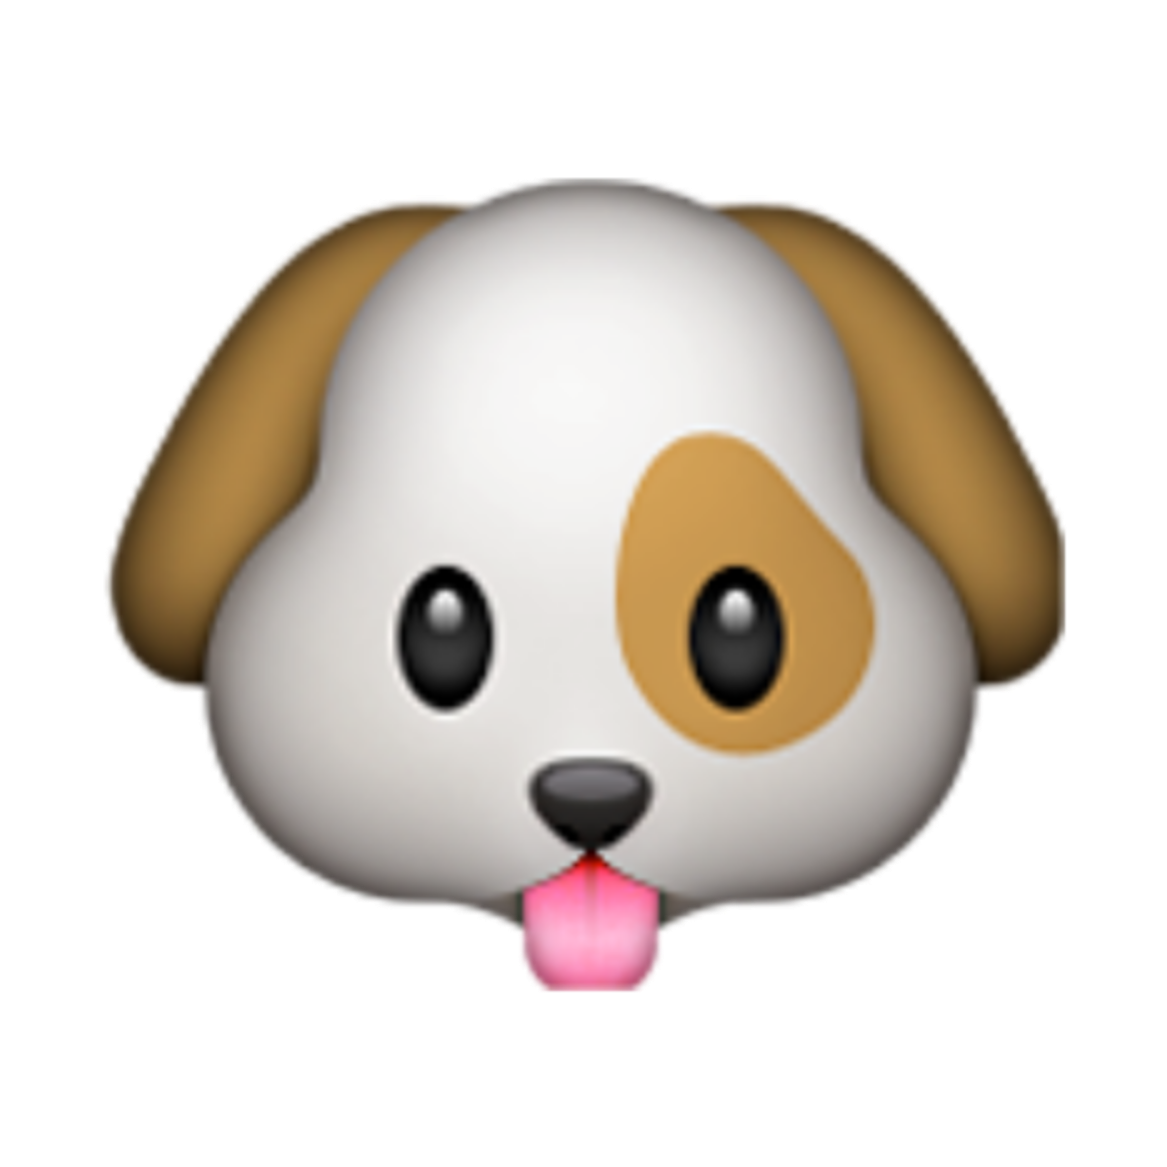 Dog emoji. ЭМОДЖИ собачка. Смайлик щенок. Эмодзи пес. Смайлик собачки айфон.